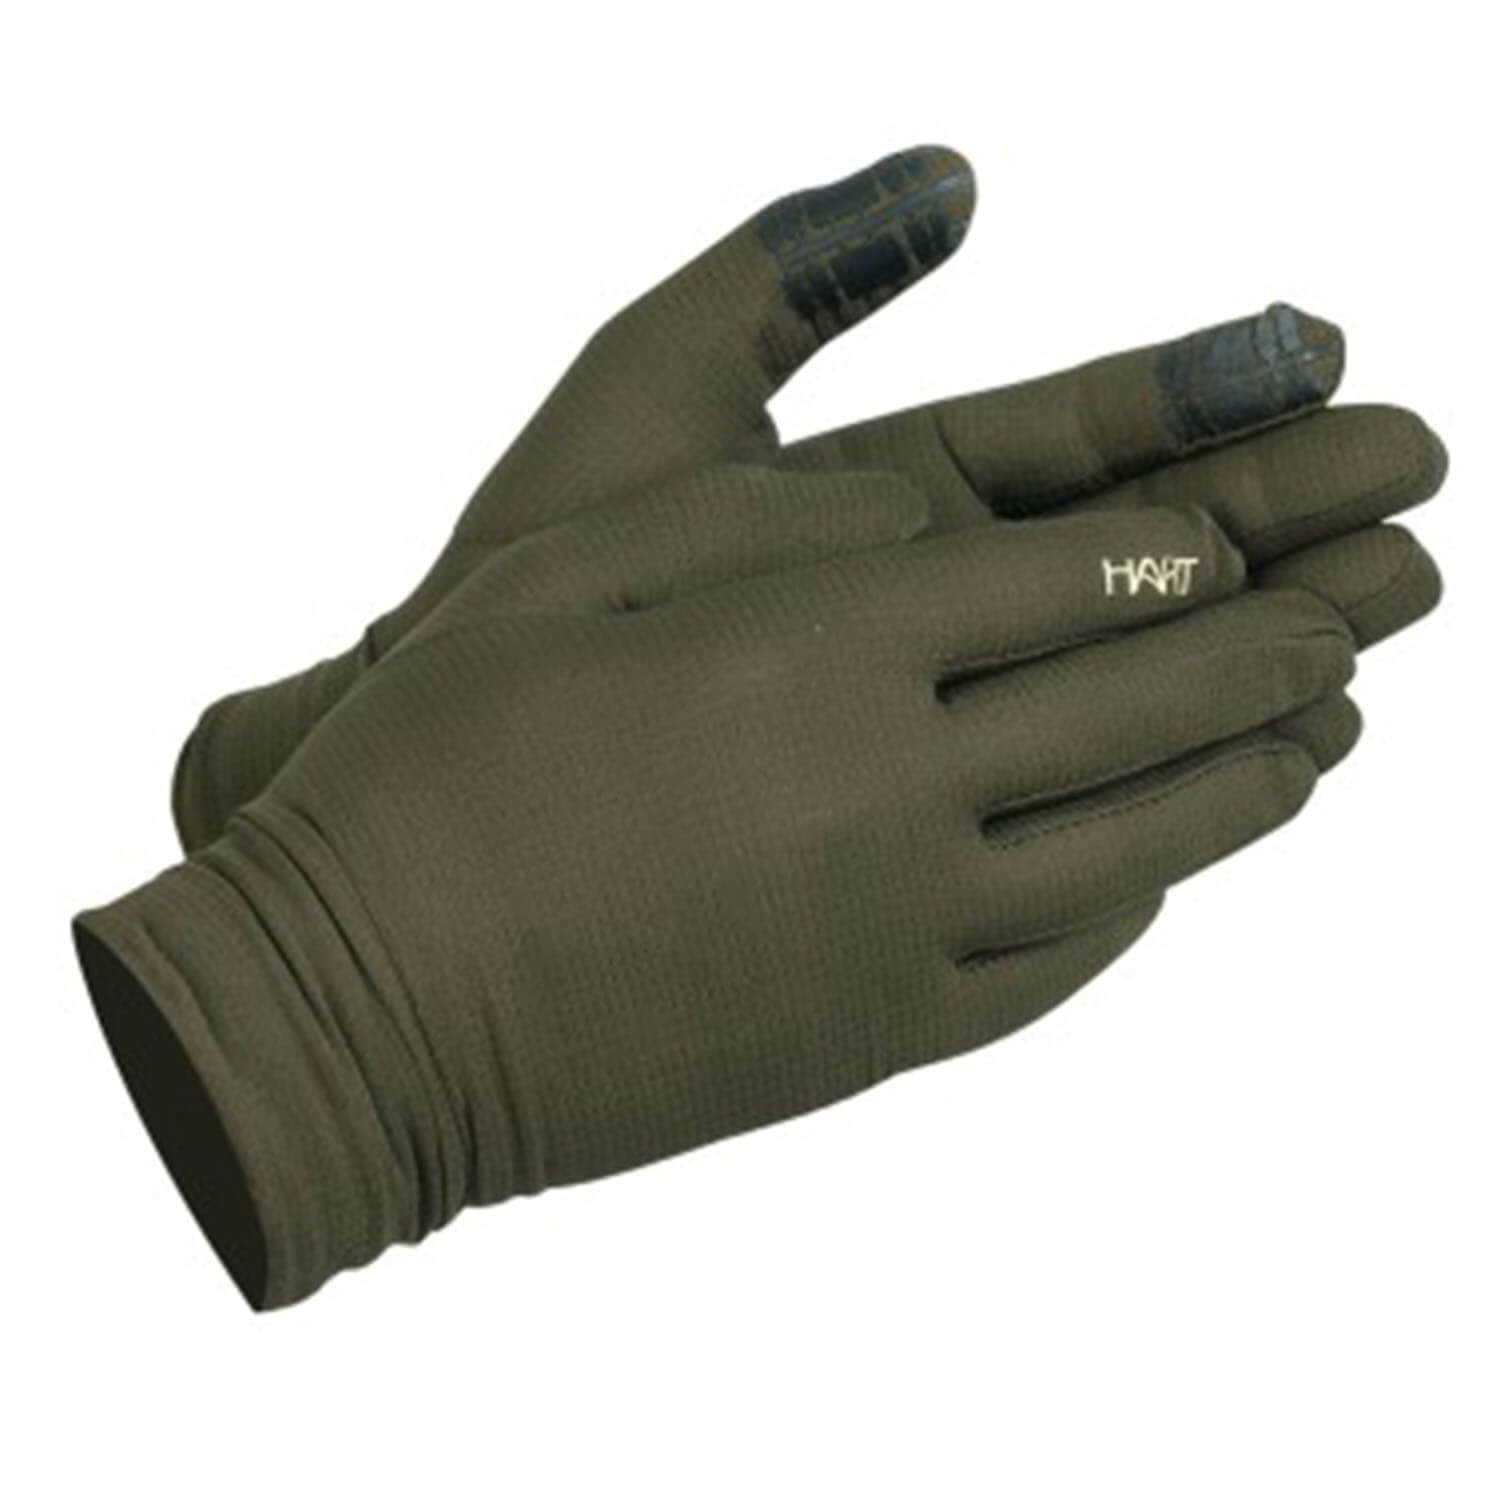  Hart Handschoenen Ural-GC overtrek Ultralight (Groen) - Insecten- & tekenbescherming